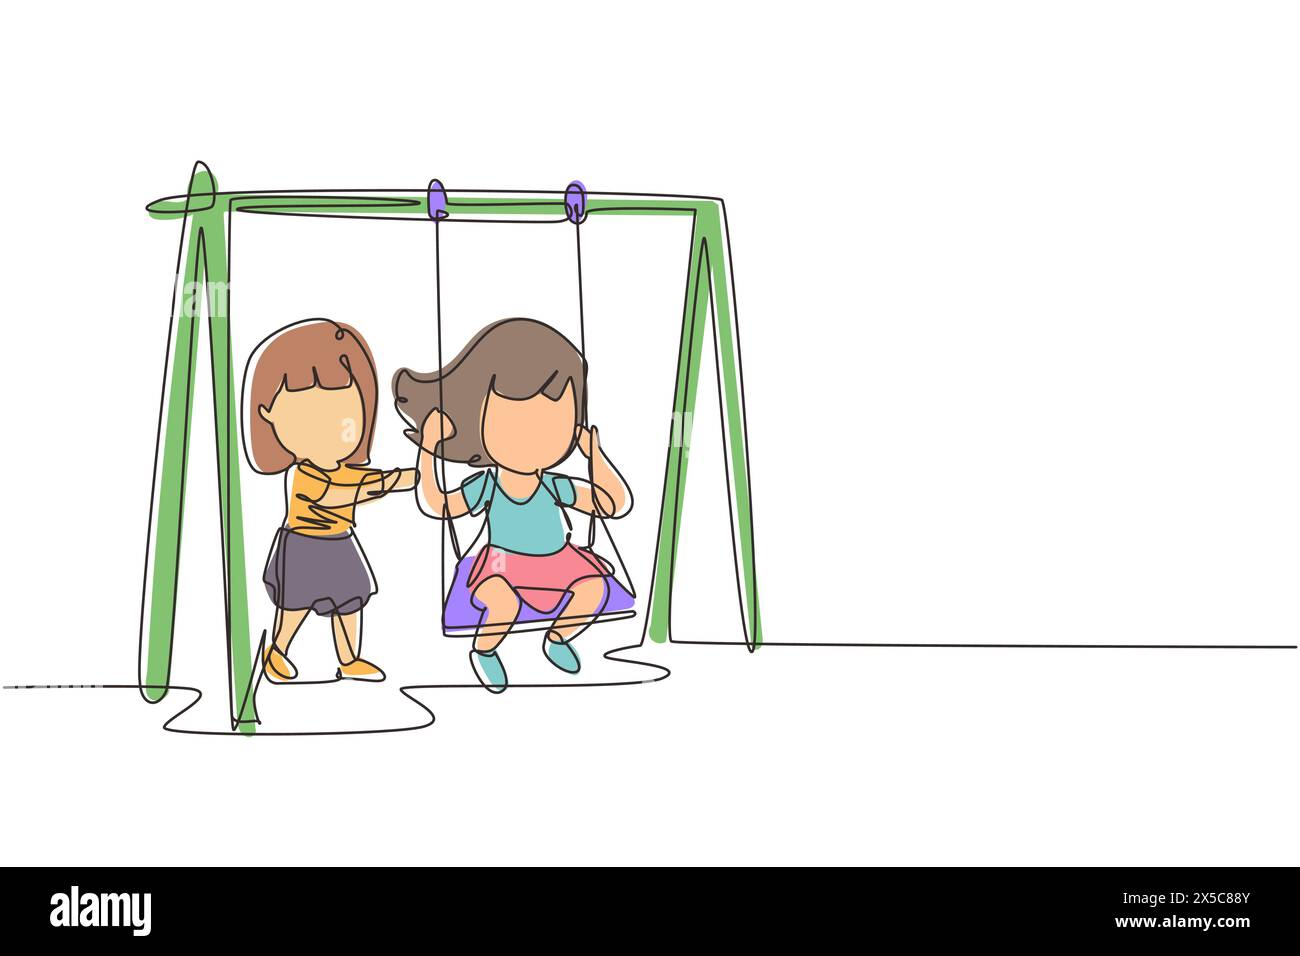 Una linea continua che disegna una bambina che oscilla sull'altalena e la sua amica ha aiutato a spingere da dietro. I bambini giocano a dondolo insieme nel parco pubblico Illustrazione Vettoriale